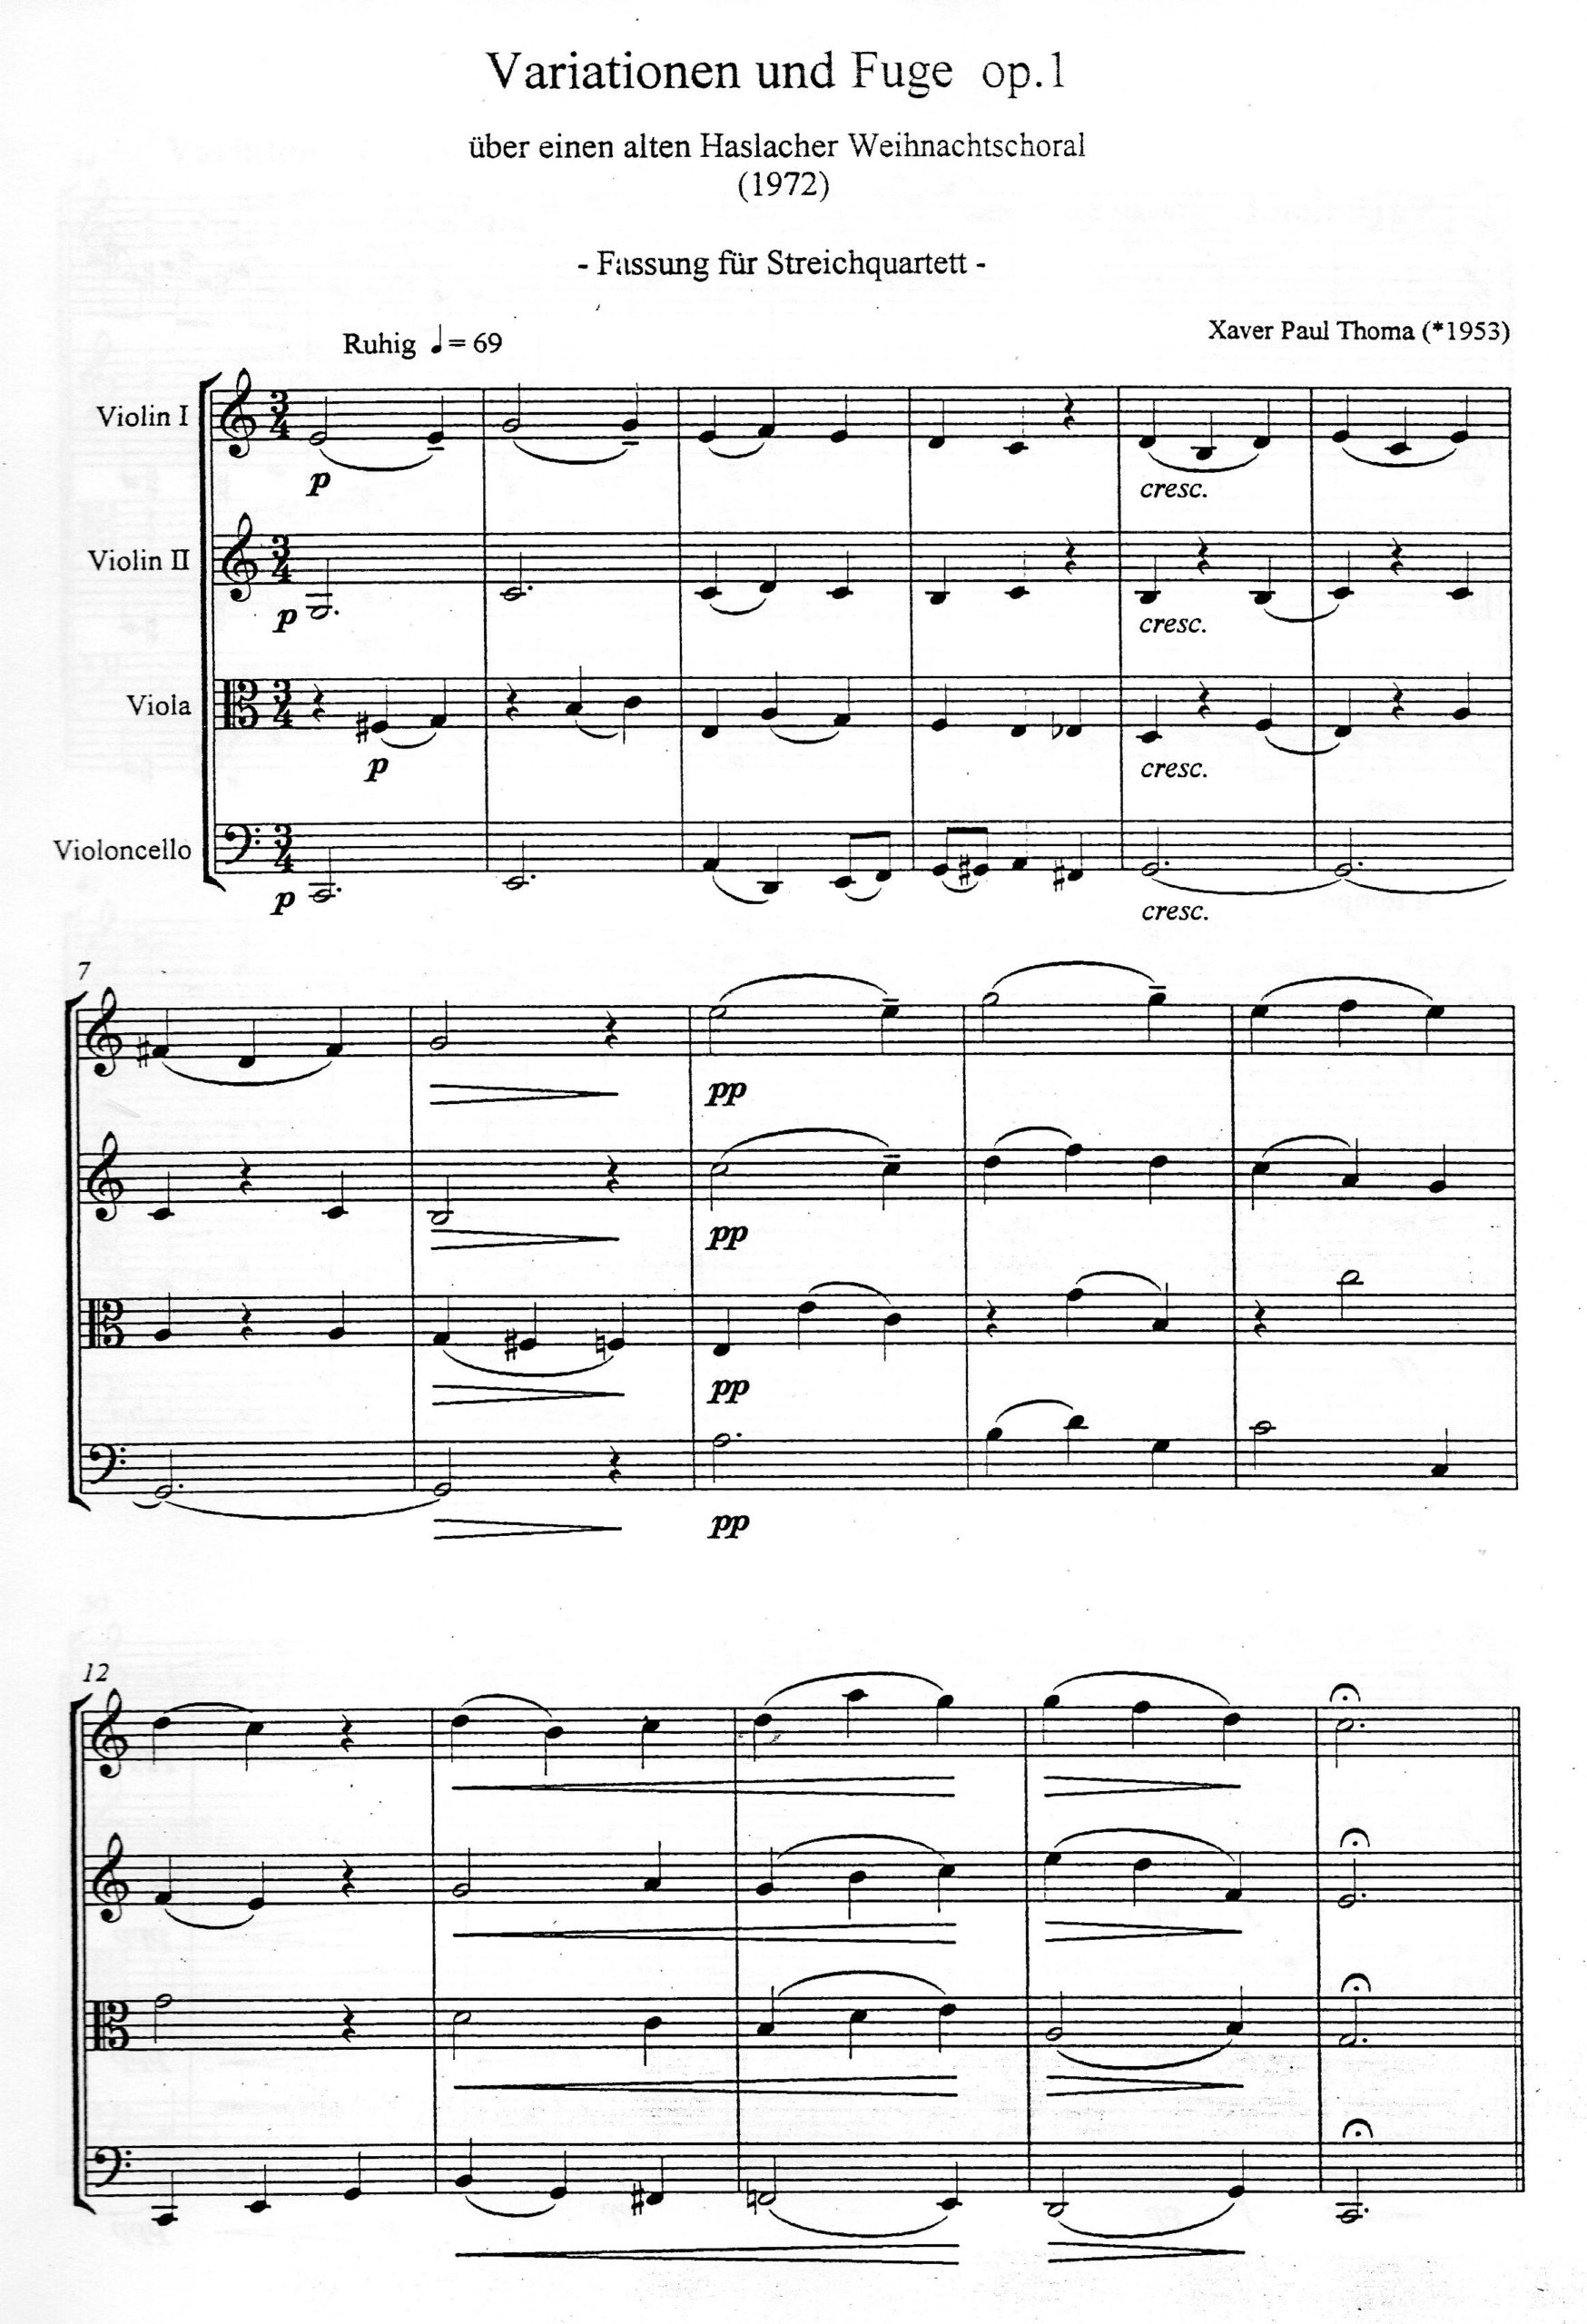 Partiturseite: xpt 002. VARIATIONEN UND FUGE für Streichquartett von Xaver Paul Thoma